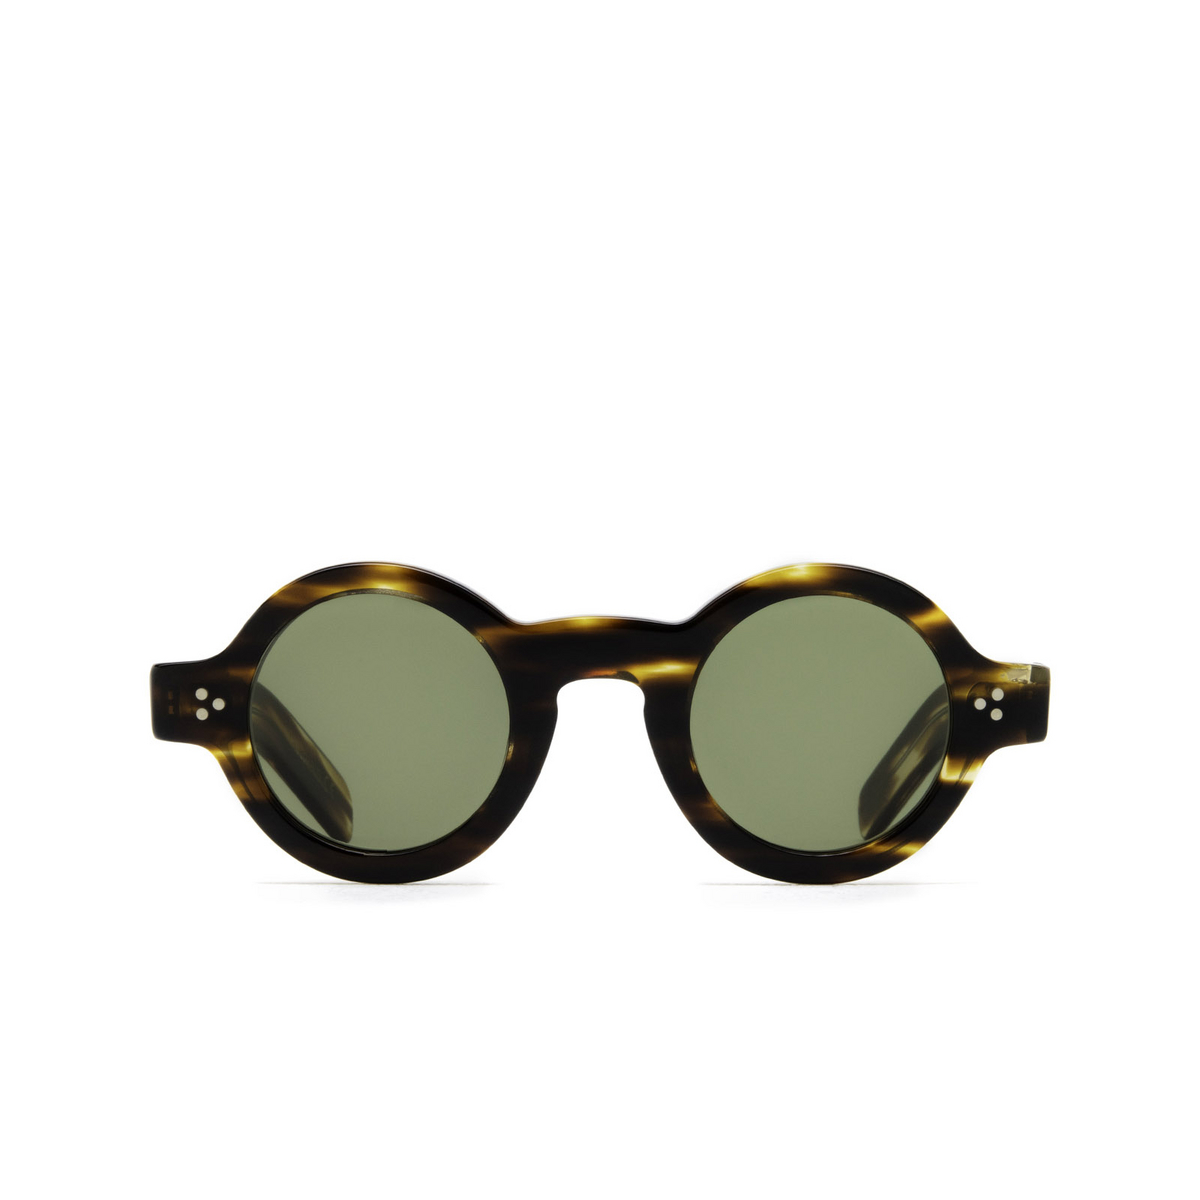 Lesca TABU Sunglasses A3 Dark Scale 1 - front view